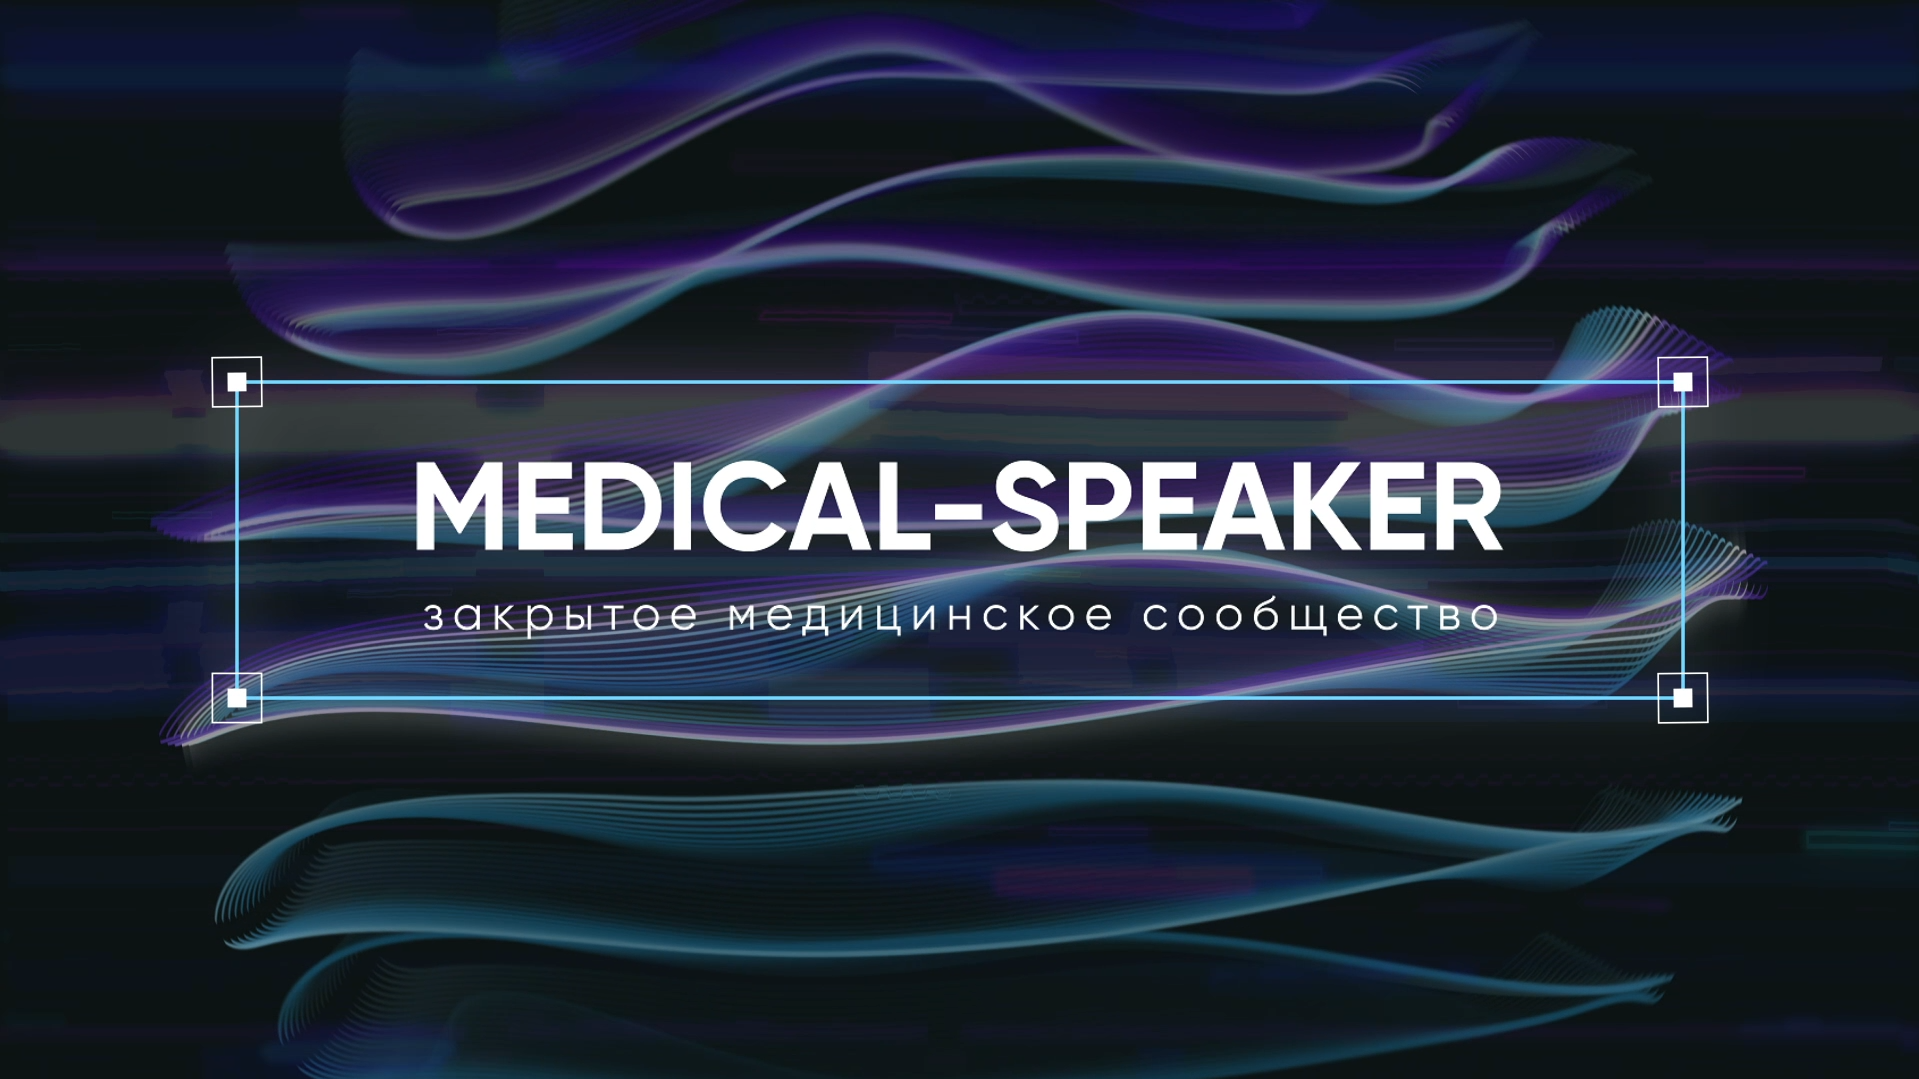 Medical-Speaker - Проморолик для медицинского сообщества